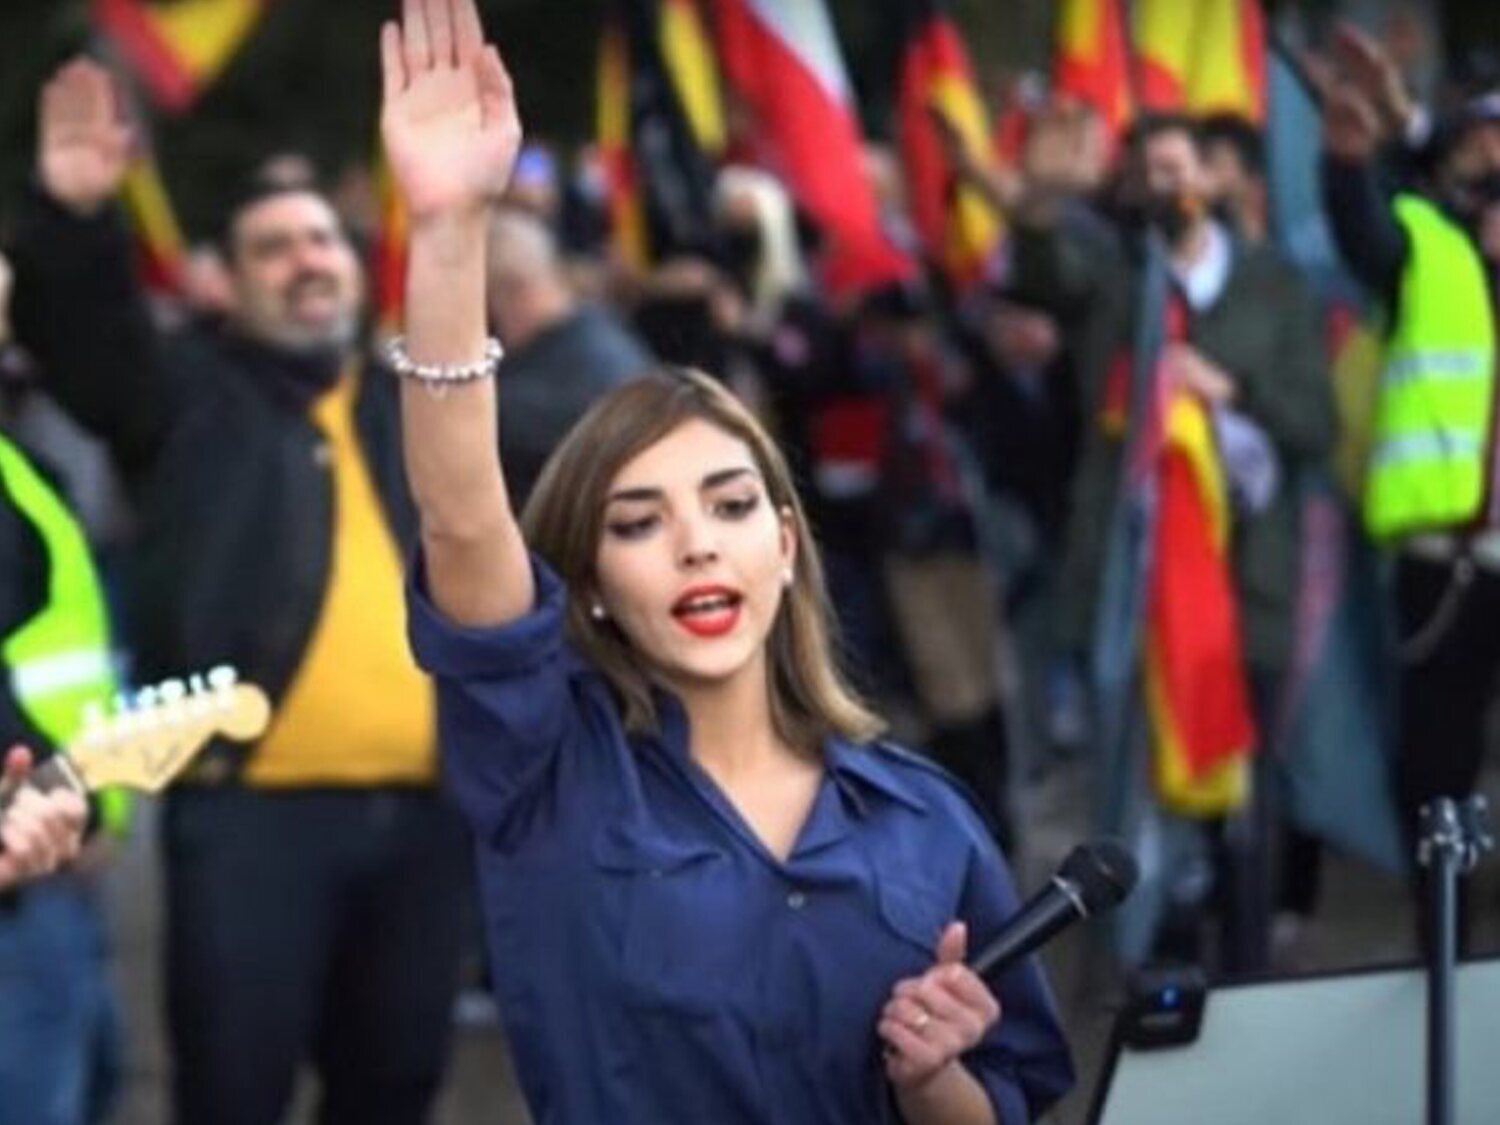 Isabel Peralta, la líder falangista del discurso de la División Azul, se marcha a Alemania becada por un partido nazi